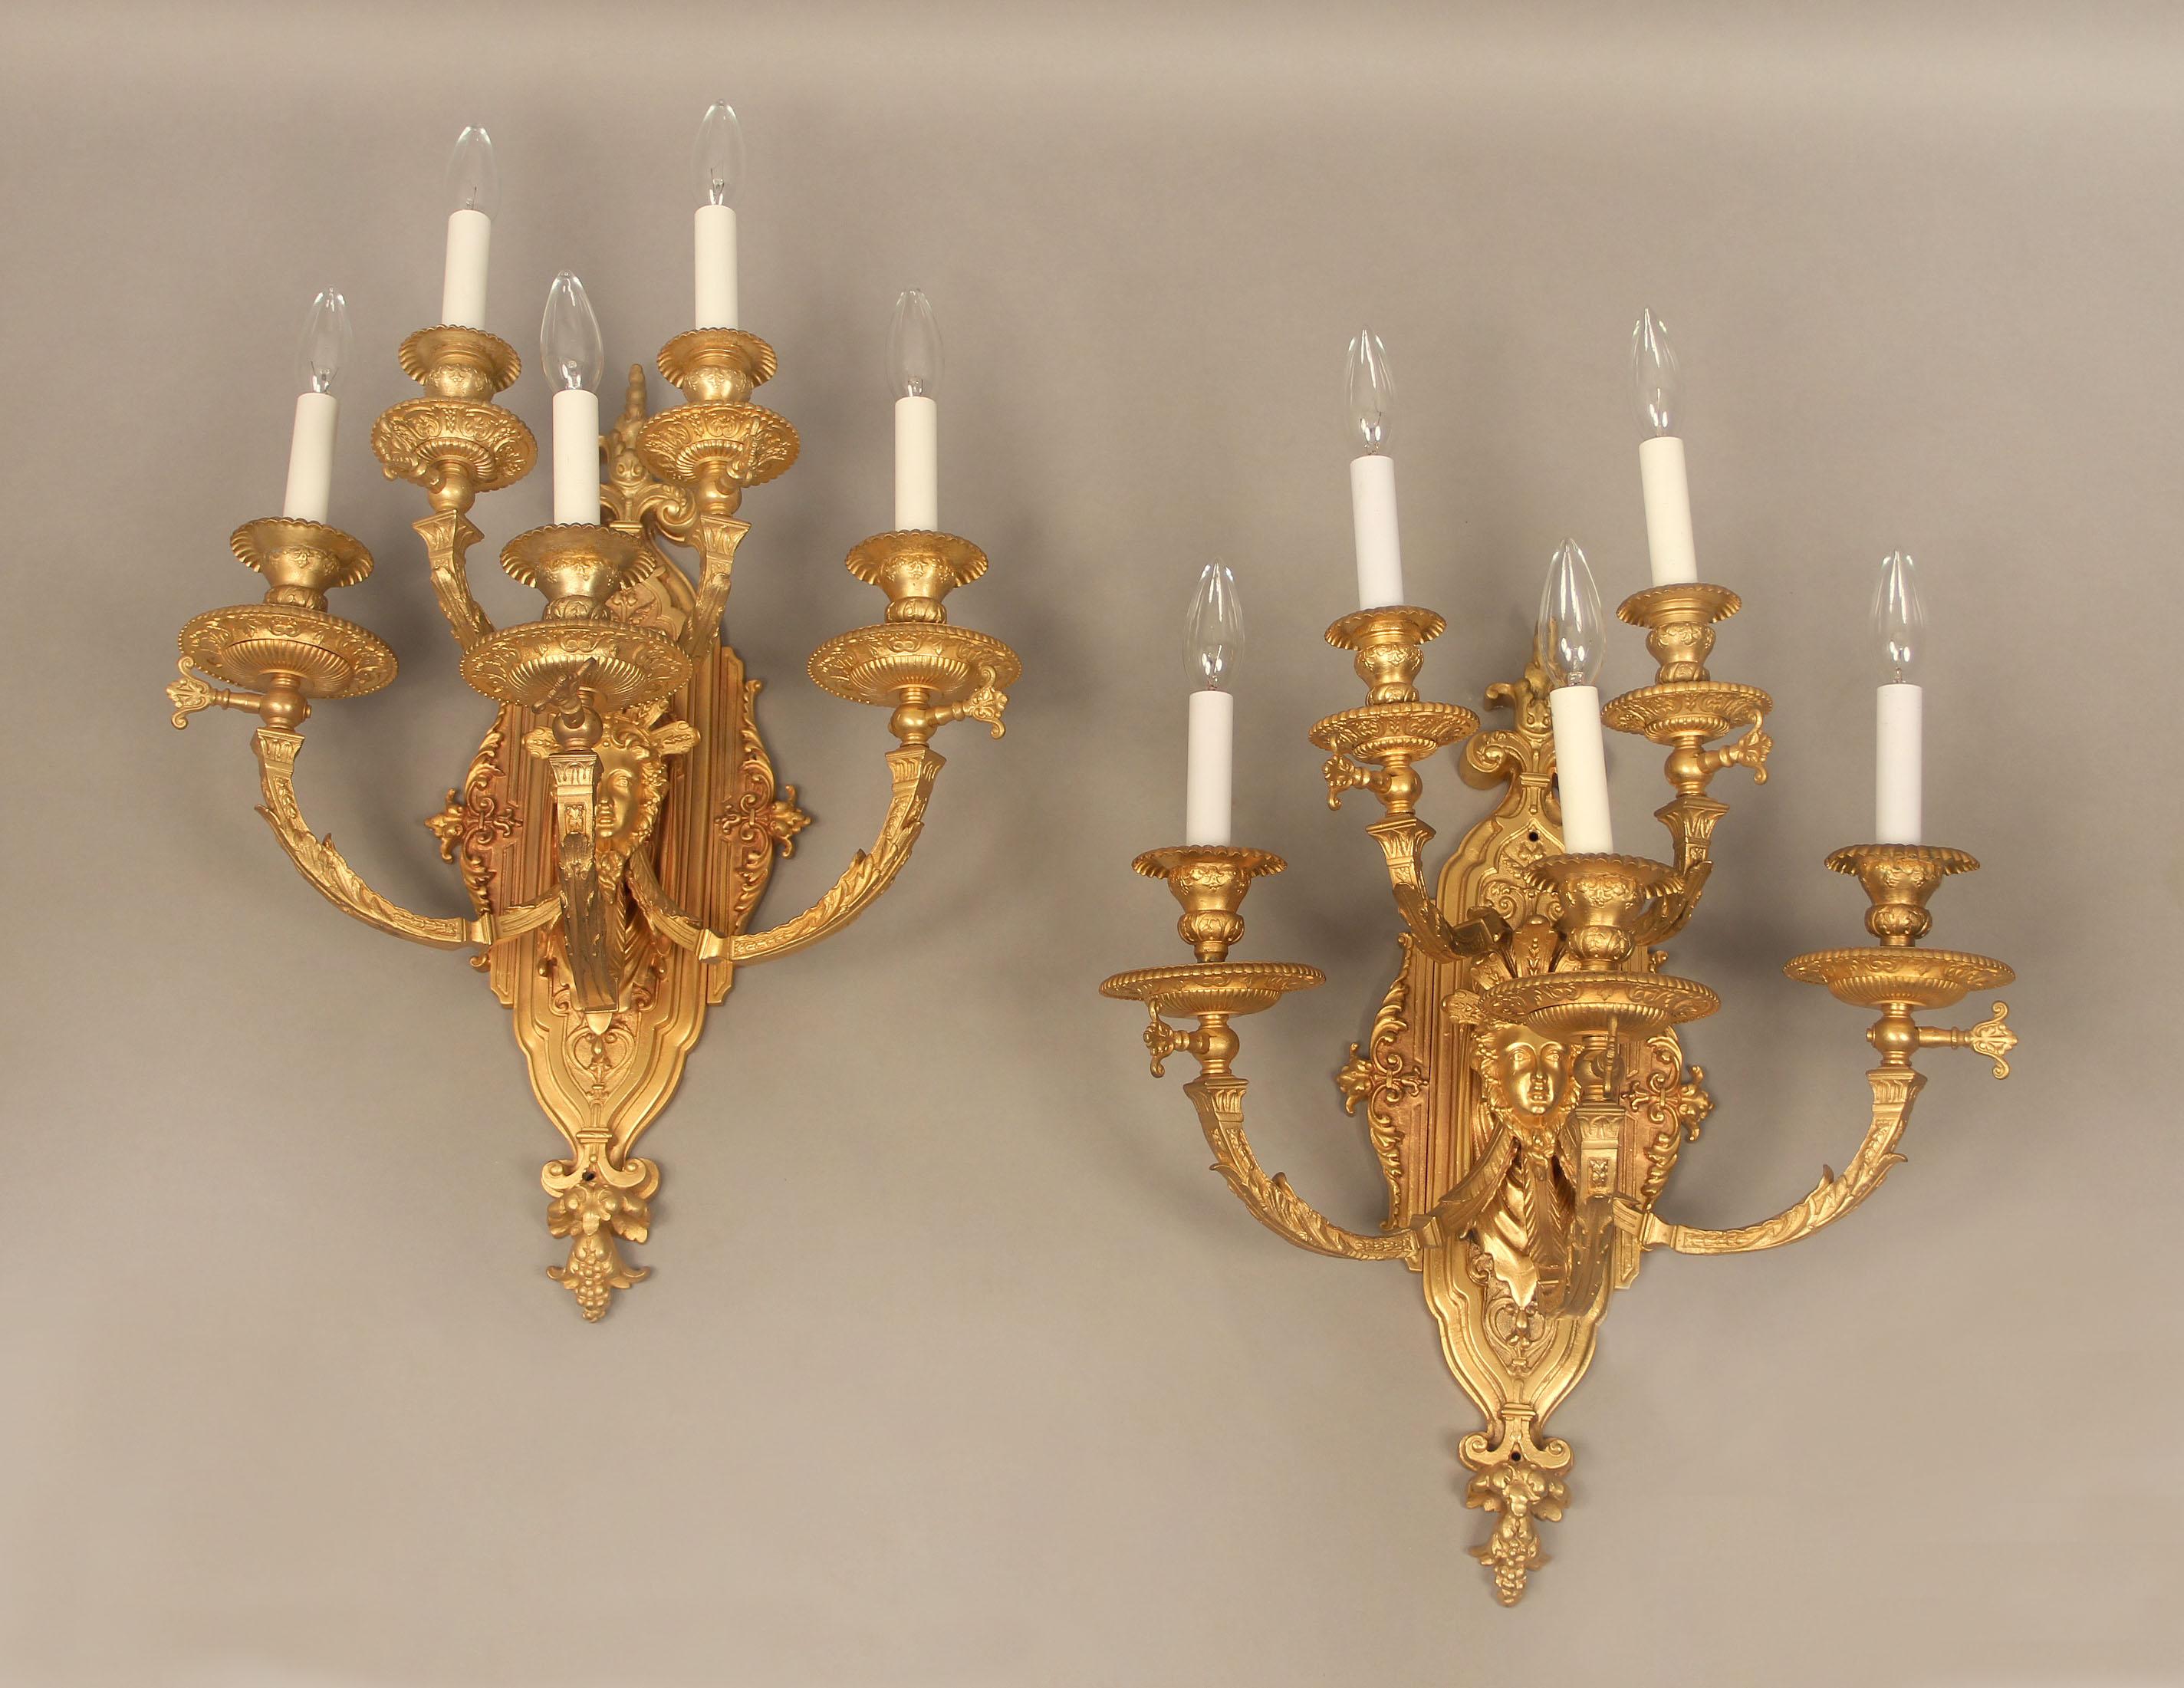 Paire d'appliques à cinq lumières en bronze doré de la fin du XIXe siècle

avec des bras et une plaque arrière foliotés, centrés par un masque féminin et cinq lumières étagées.